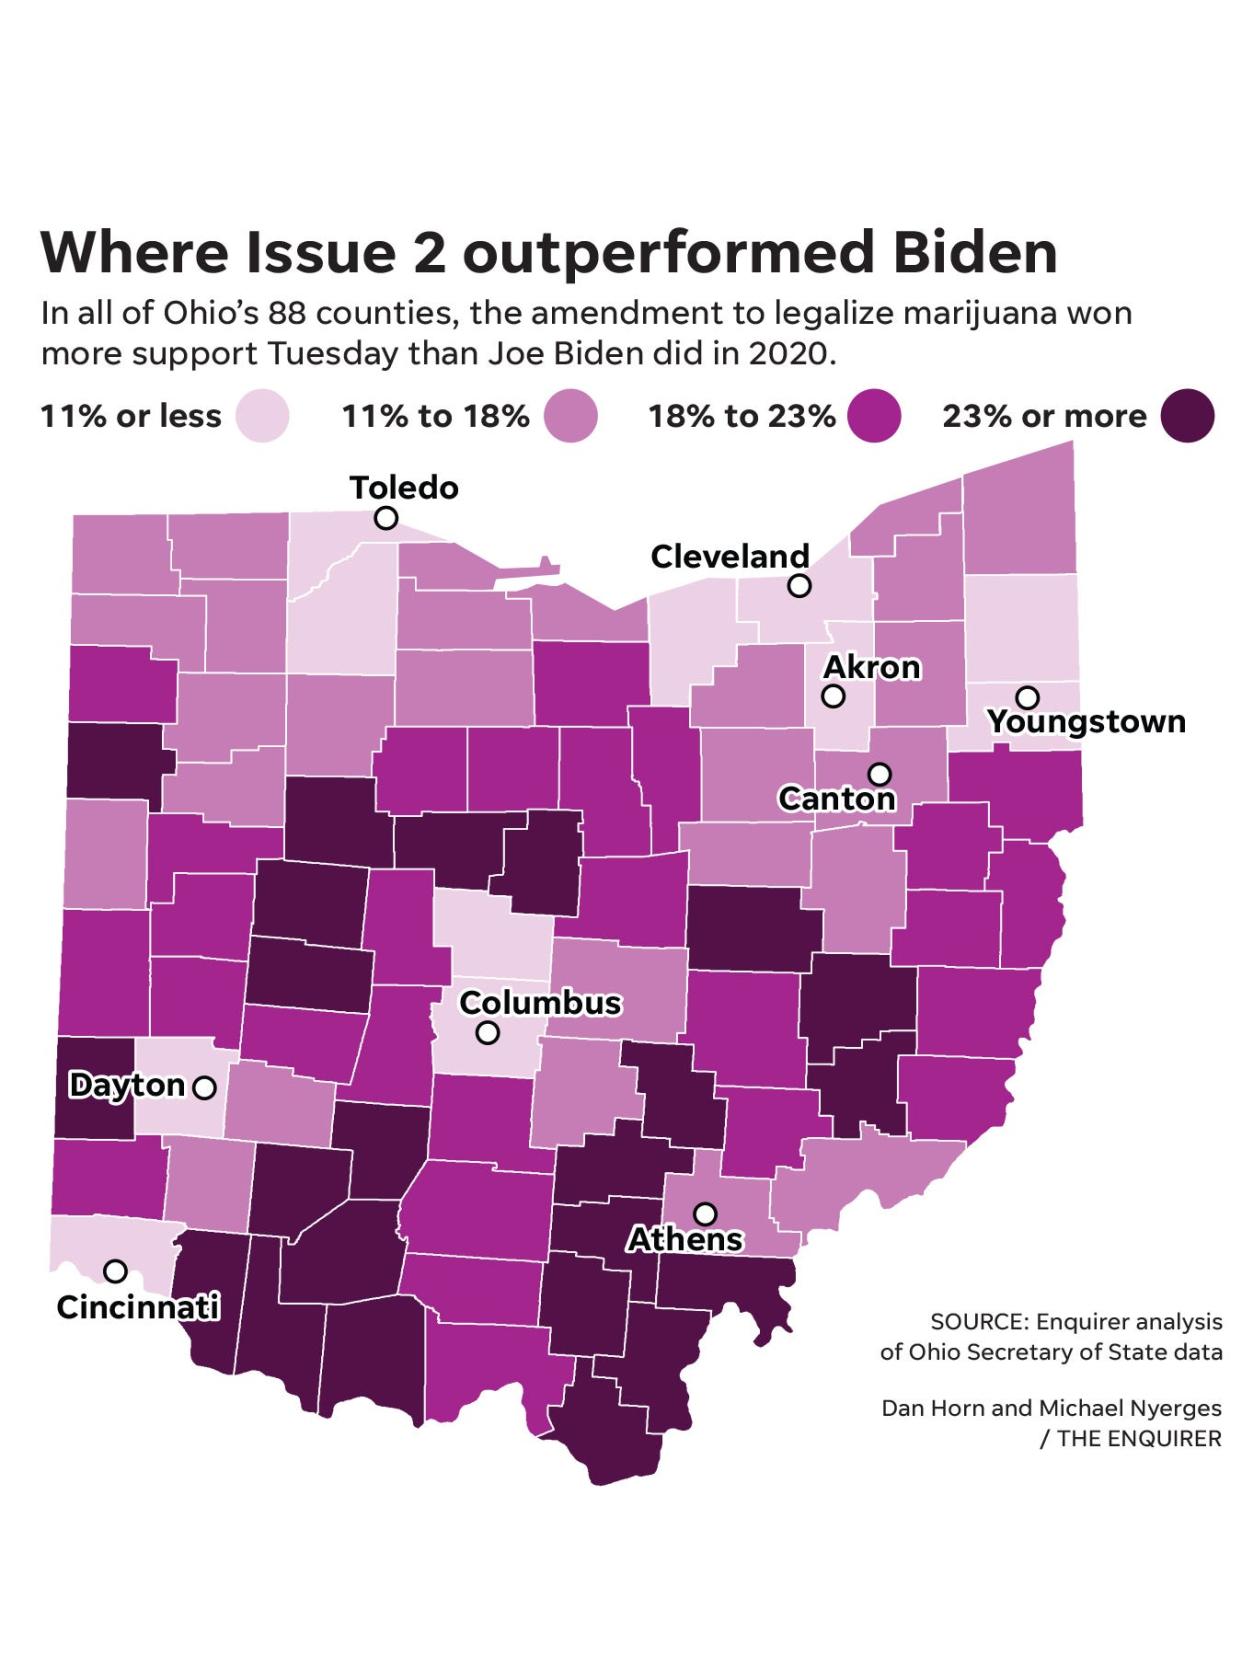 Ohio Issue 2 outperformed former President Joe Biden in 2020